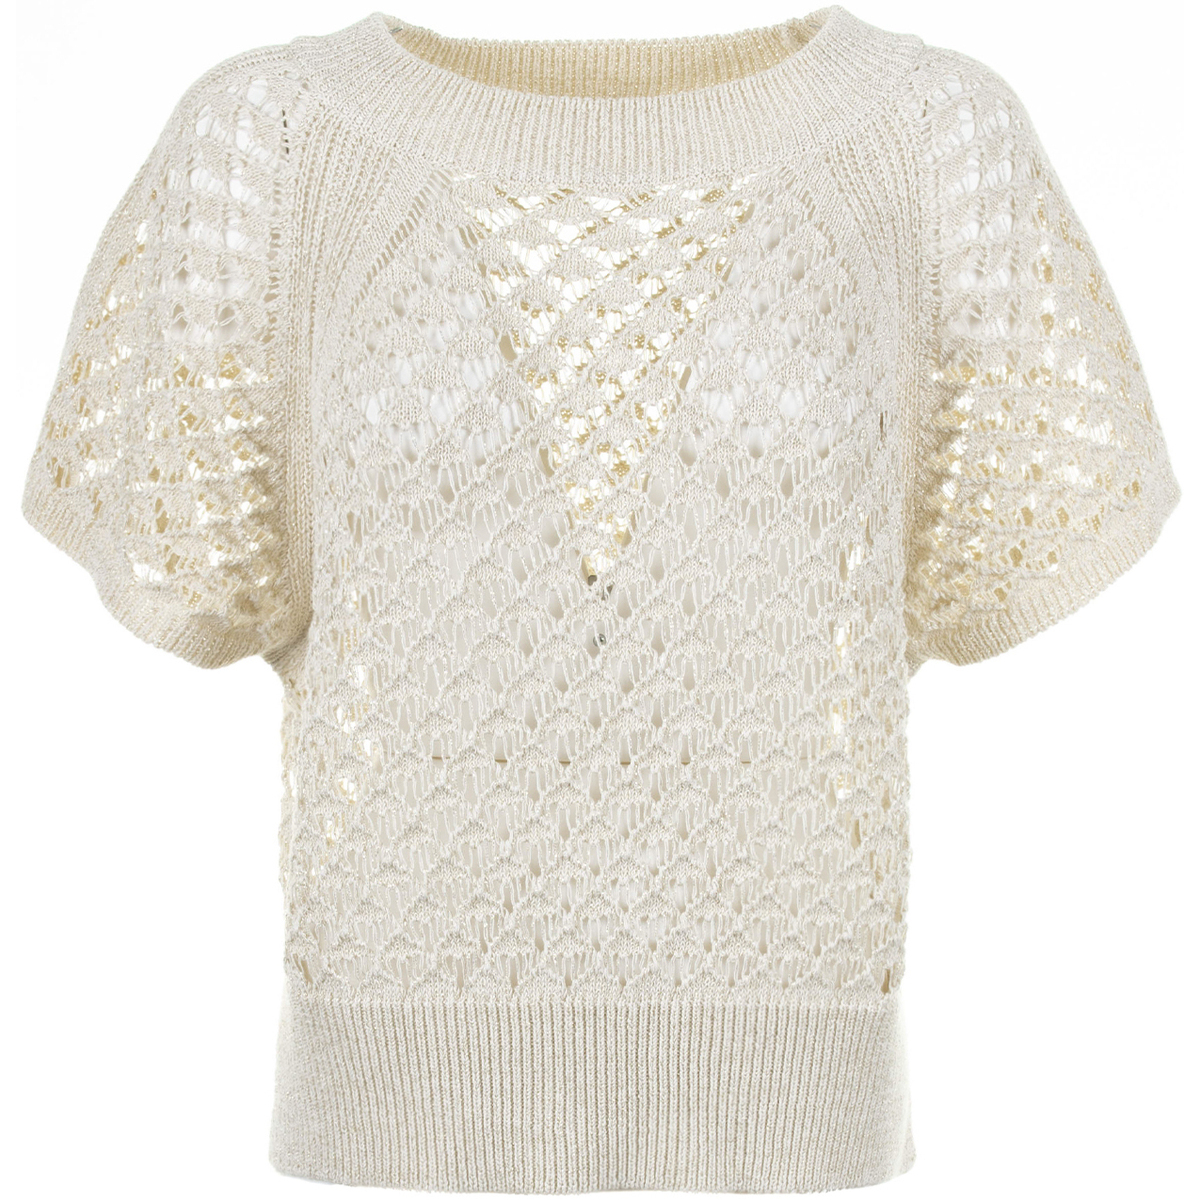 Abbigliamento Donna Maglioni Kaos Collezioni Maglia a maniche corte panna a rete Bianco